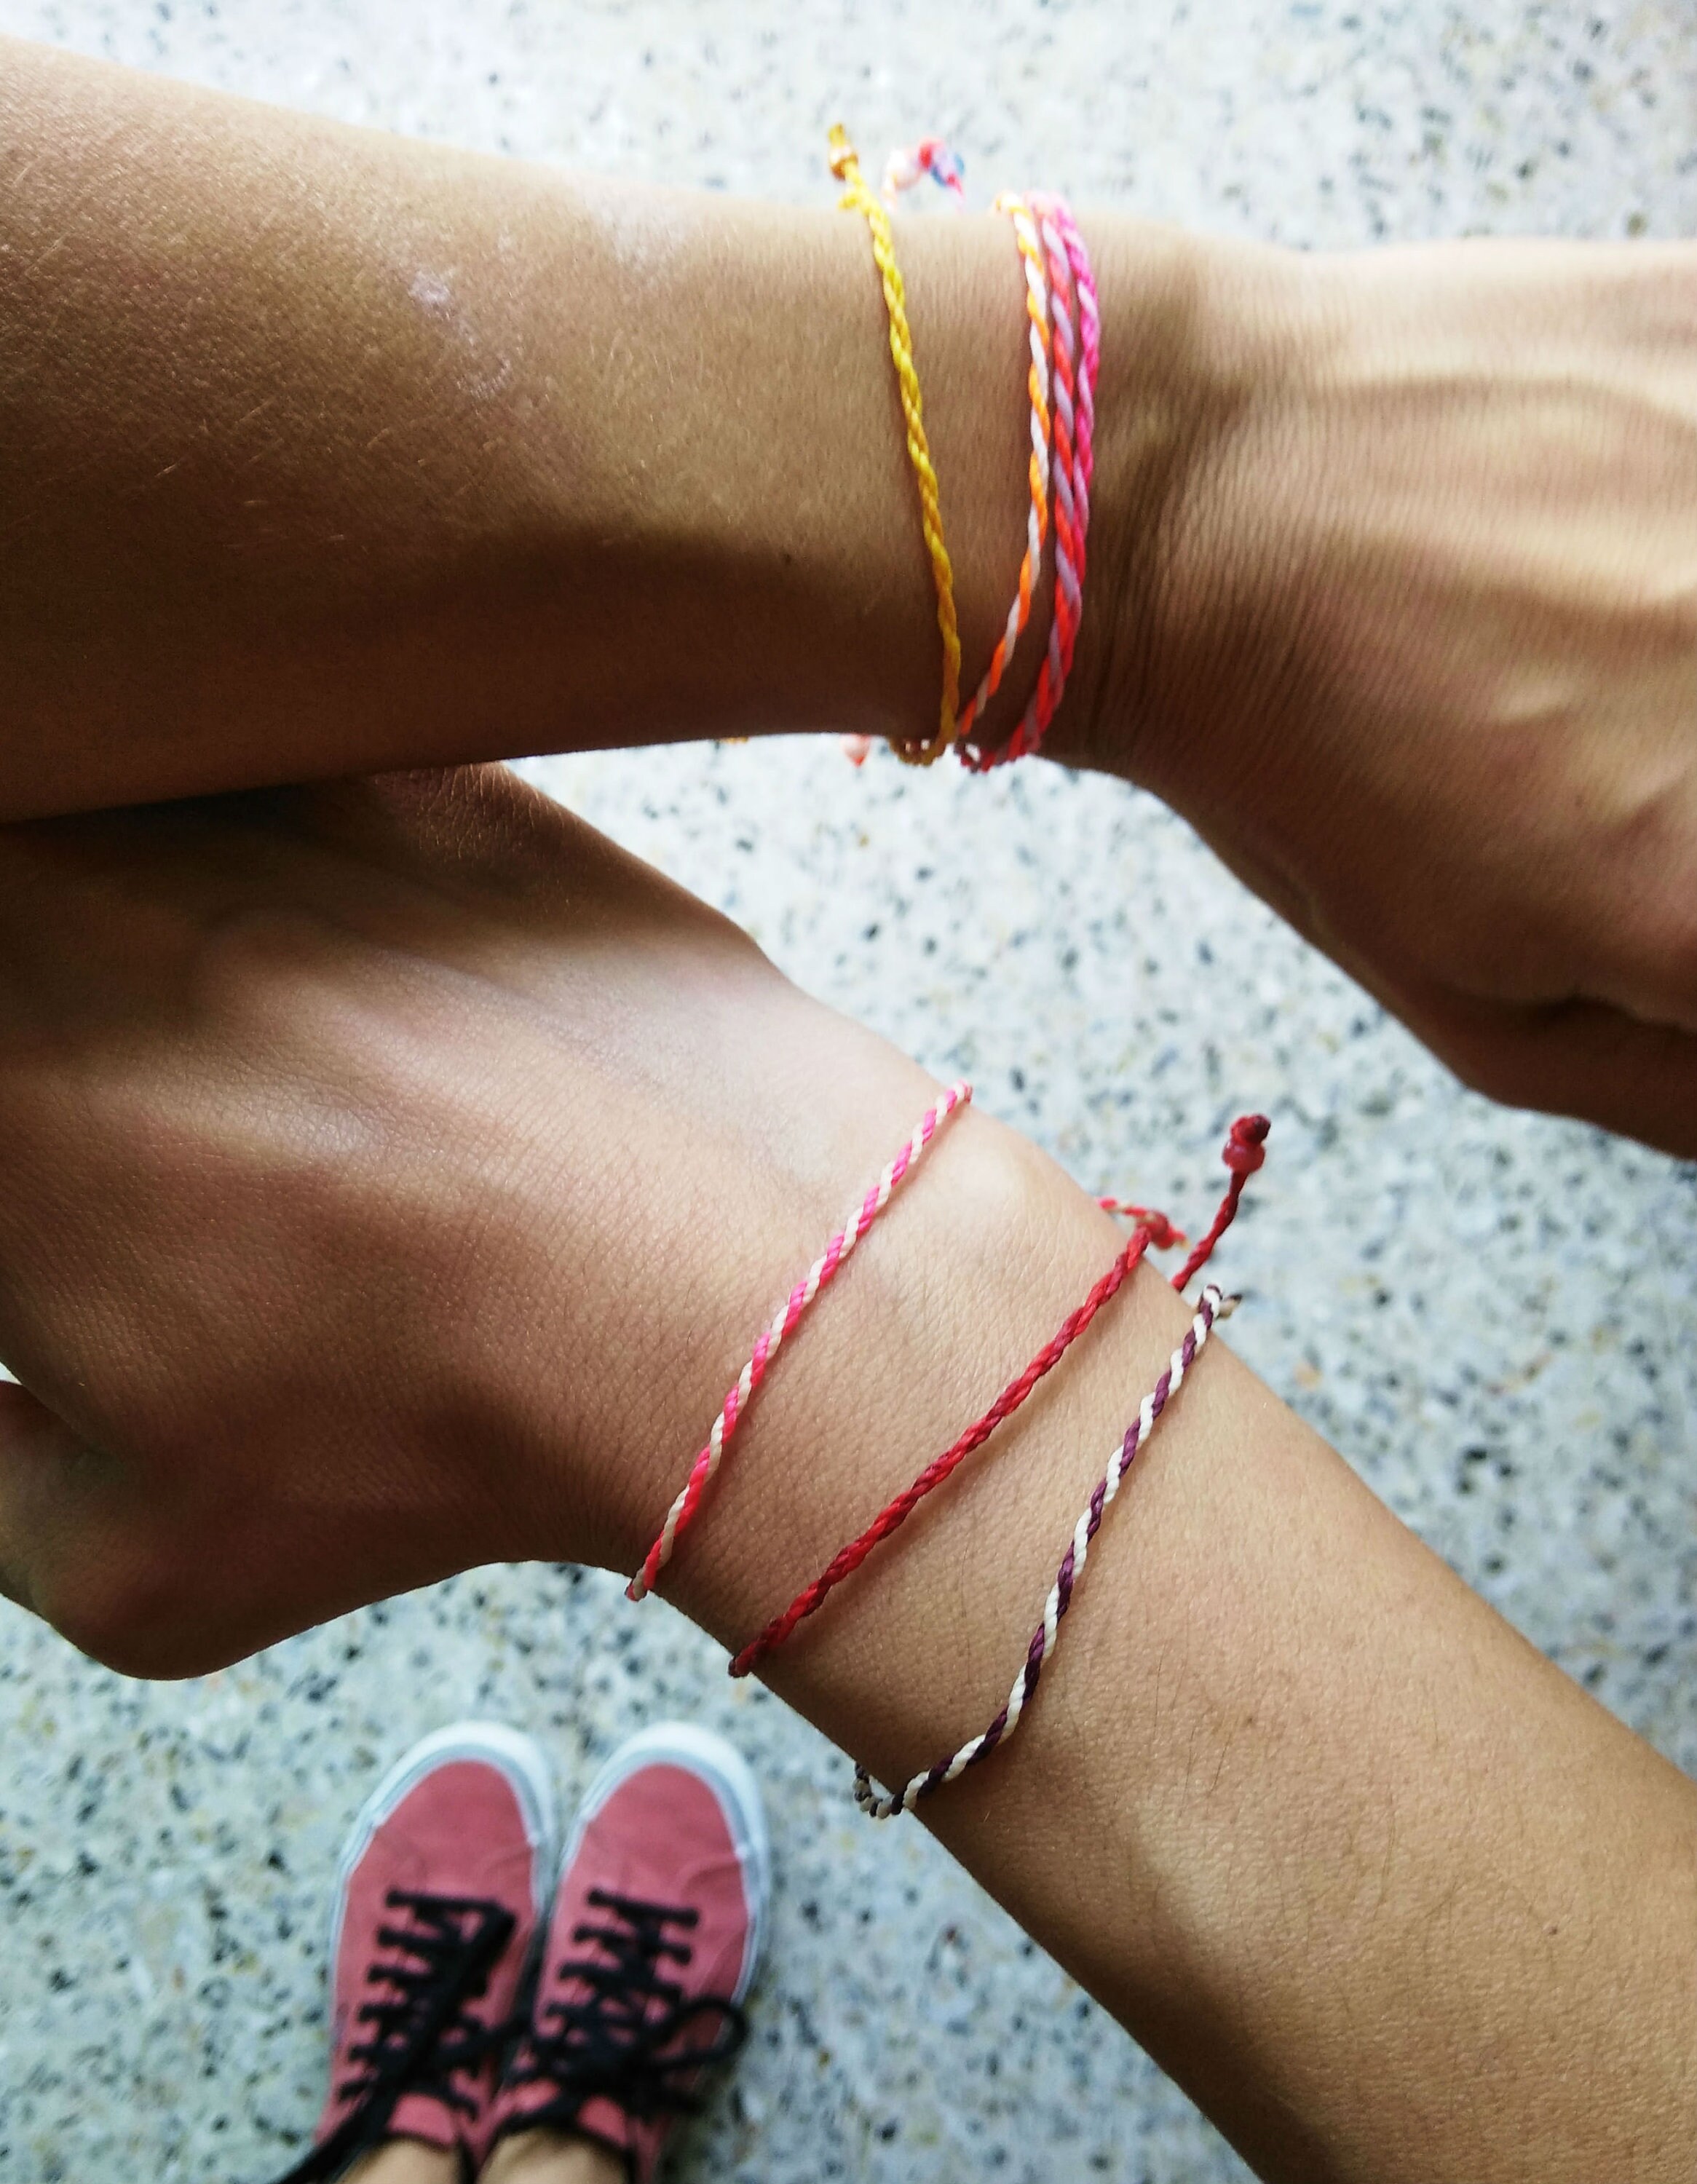 Wax String bracelets, waterproof adjustable wax string bracelets